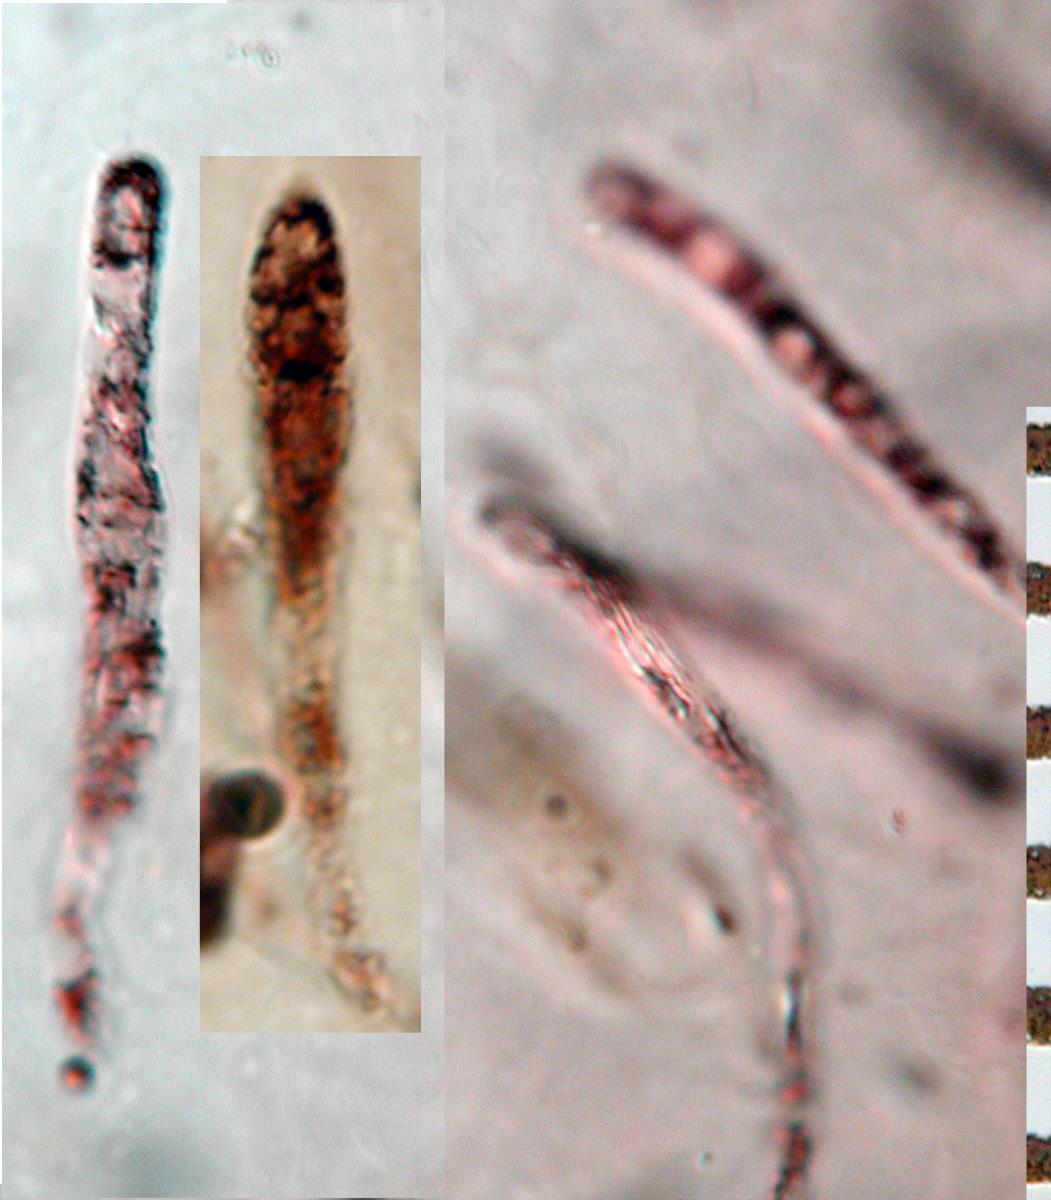 Russula laccata image